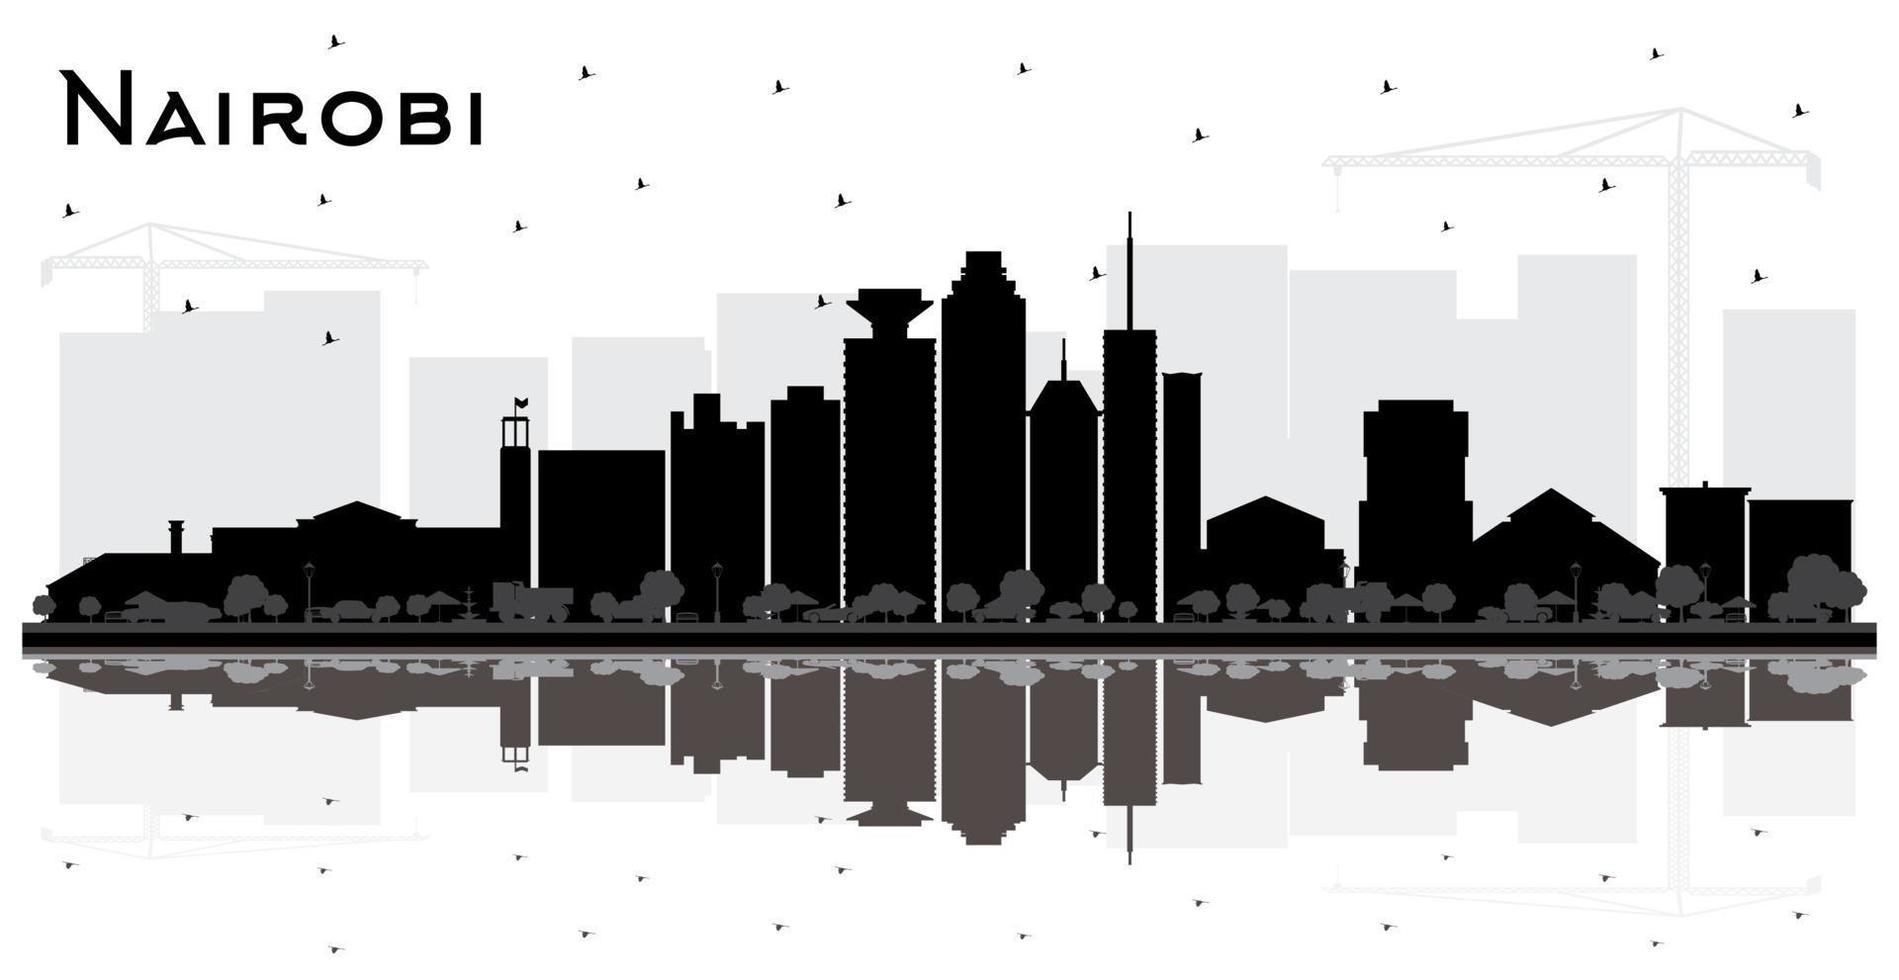 nairobi kenia city skyline silhouette mit schwarzen gebäuden und reflexionen isoliert auf weiß. vektor